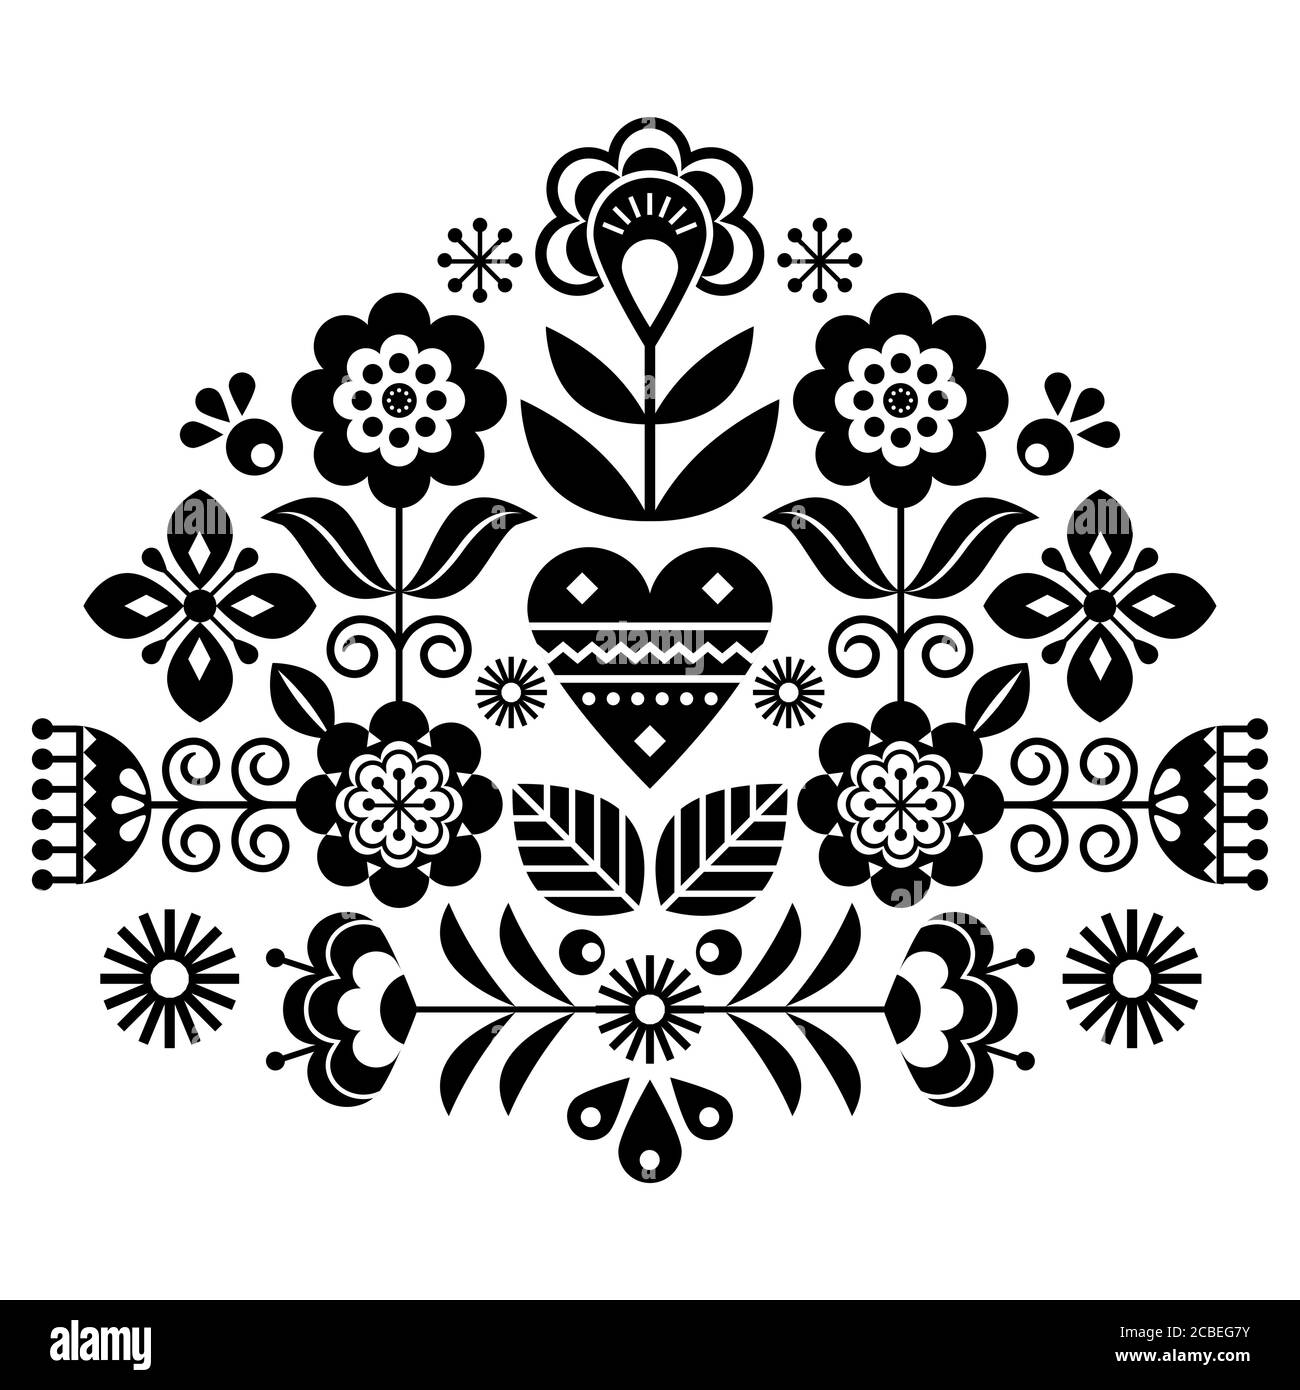 Design vettoriale dei fiori folkloristici scandinavi, motivo floreale grazioso ispirato ai ricami tradizionali di Svezia, Norvegia e Danimarca Illustrazione Vettoriale